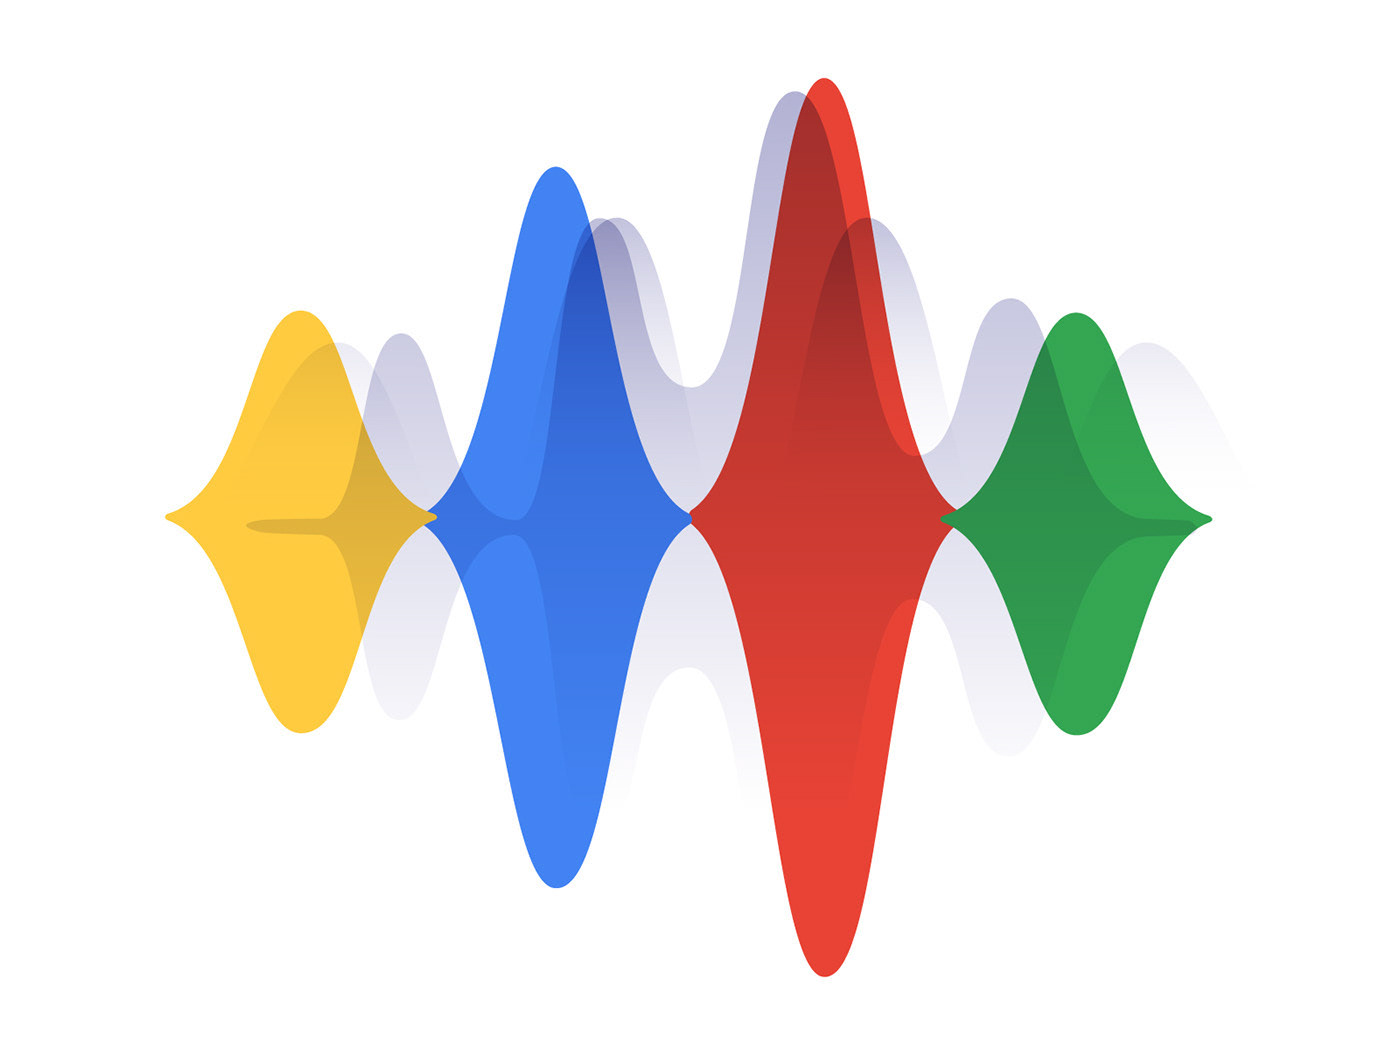 design google logo music pulse Soundwaves waves